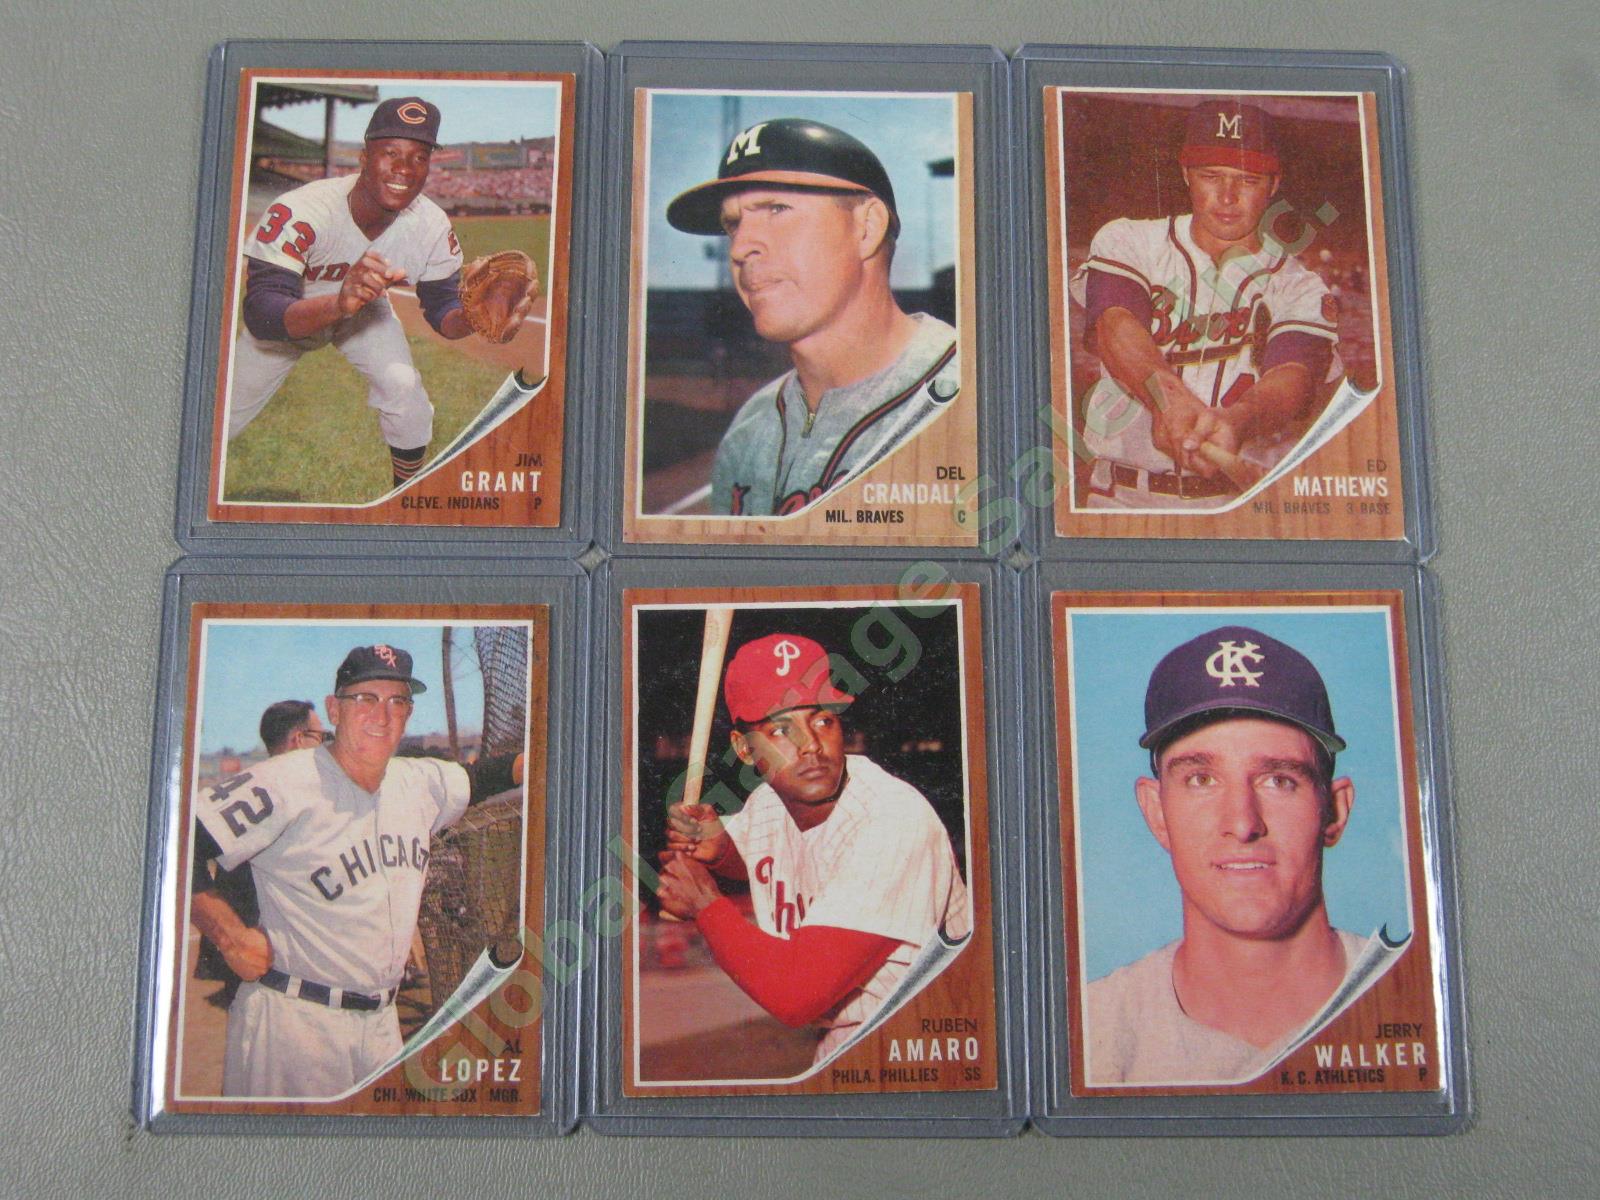 160 Vtg 1961 1962 1963 Topps Baseball Card Lot w/ RBI Home Run Leaders + VG-EX 9